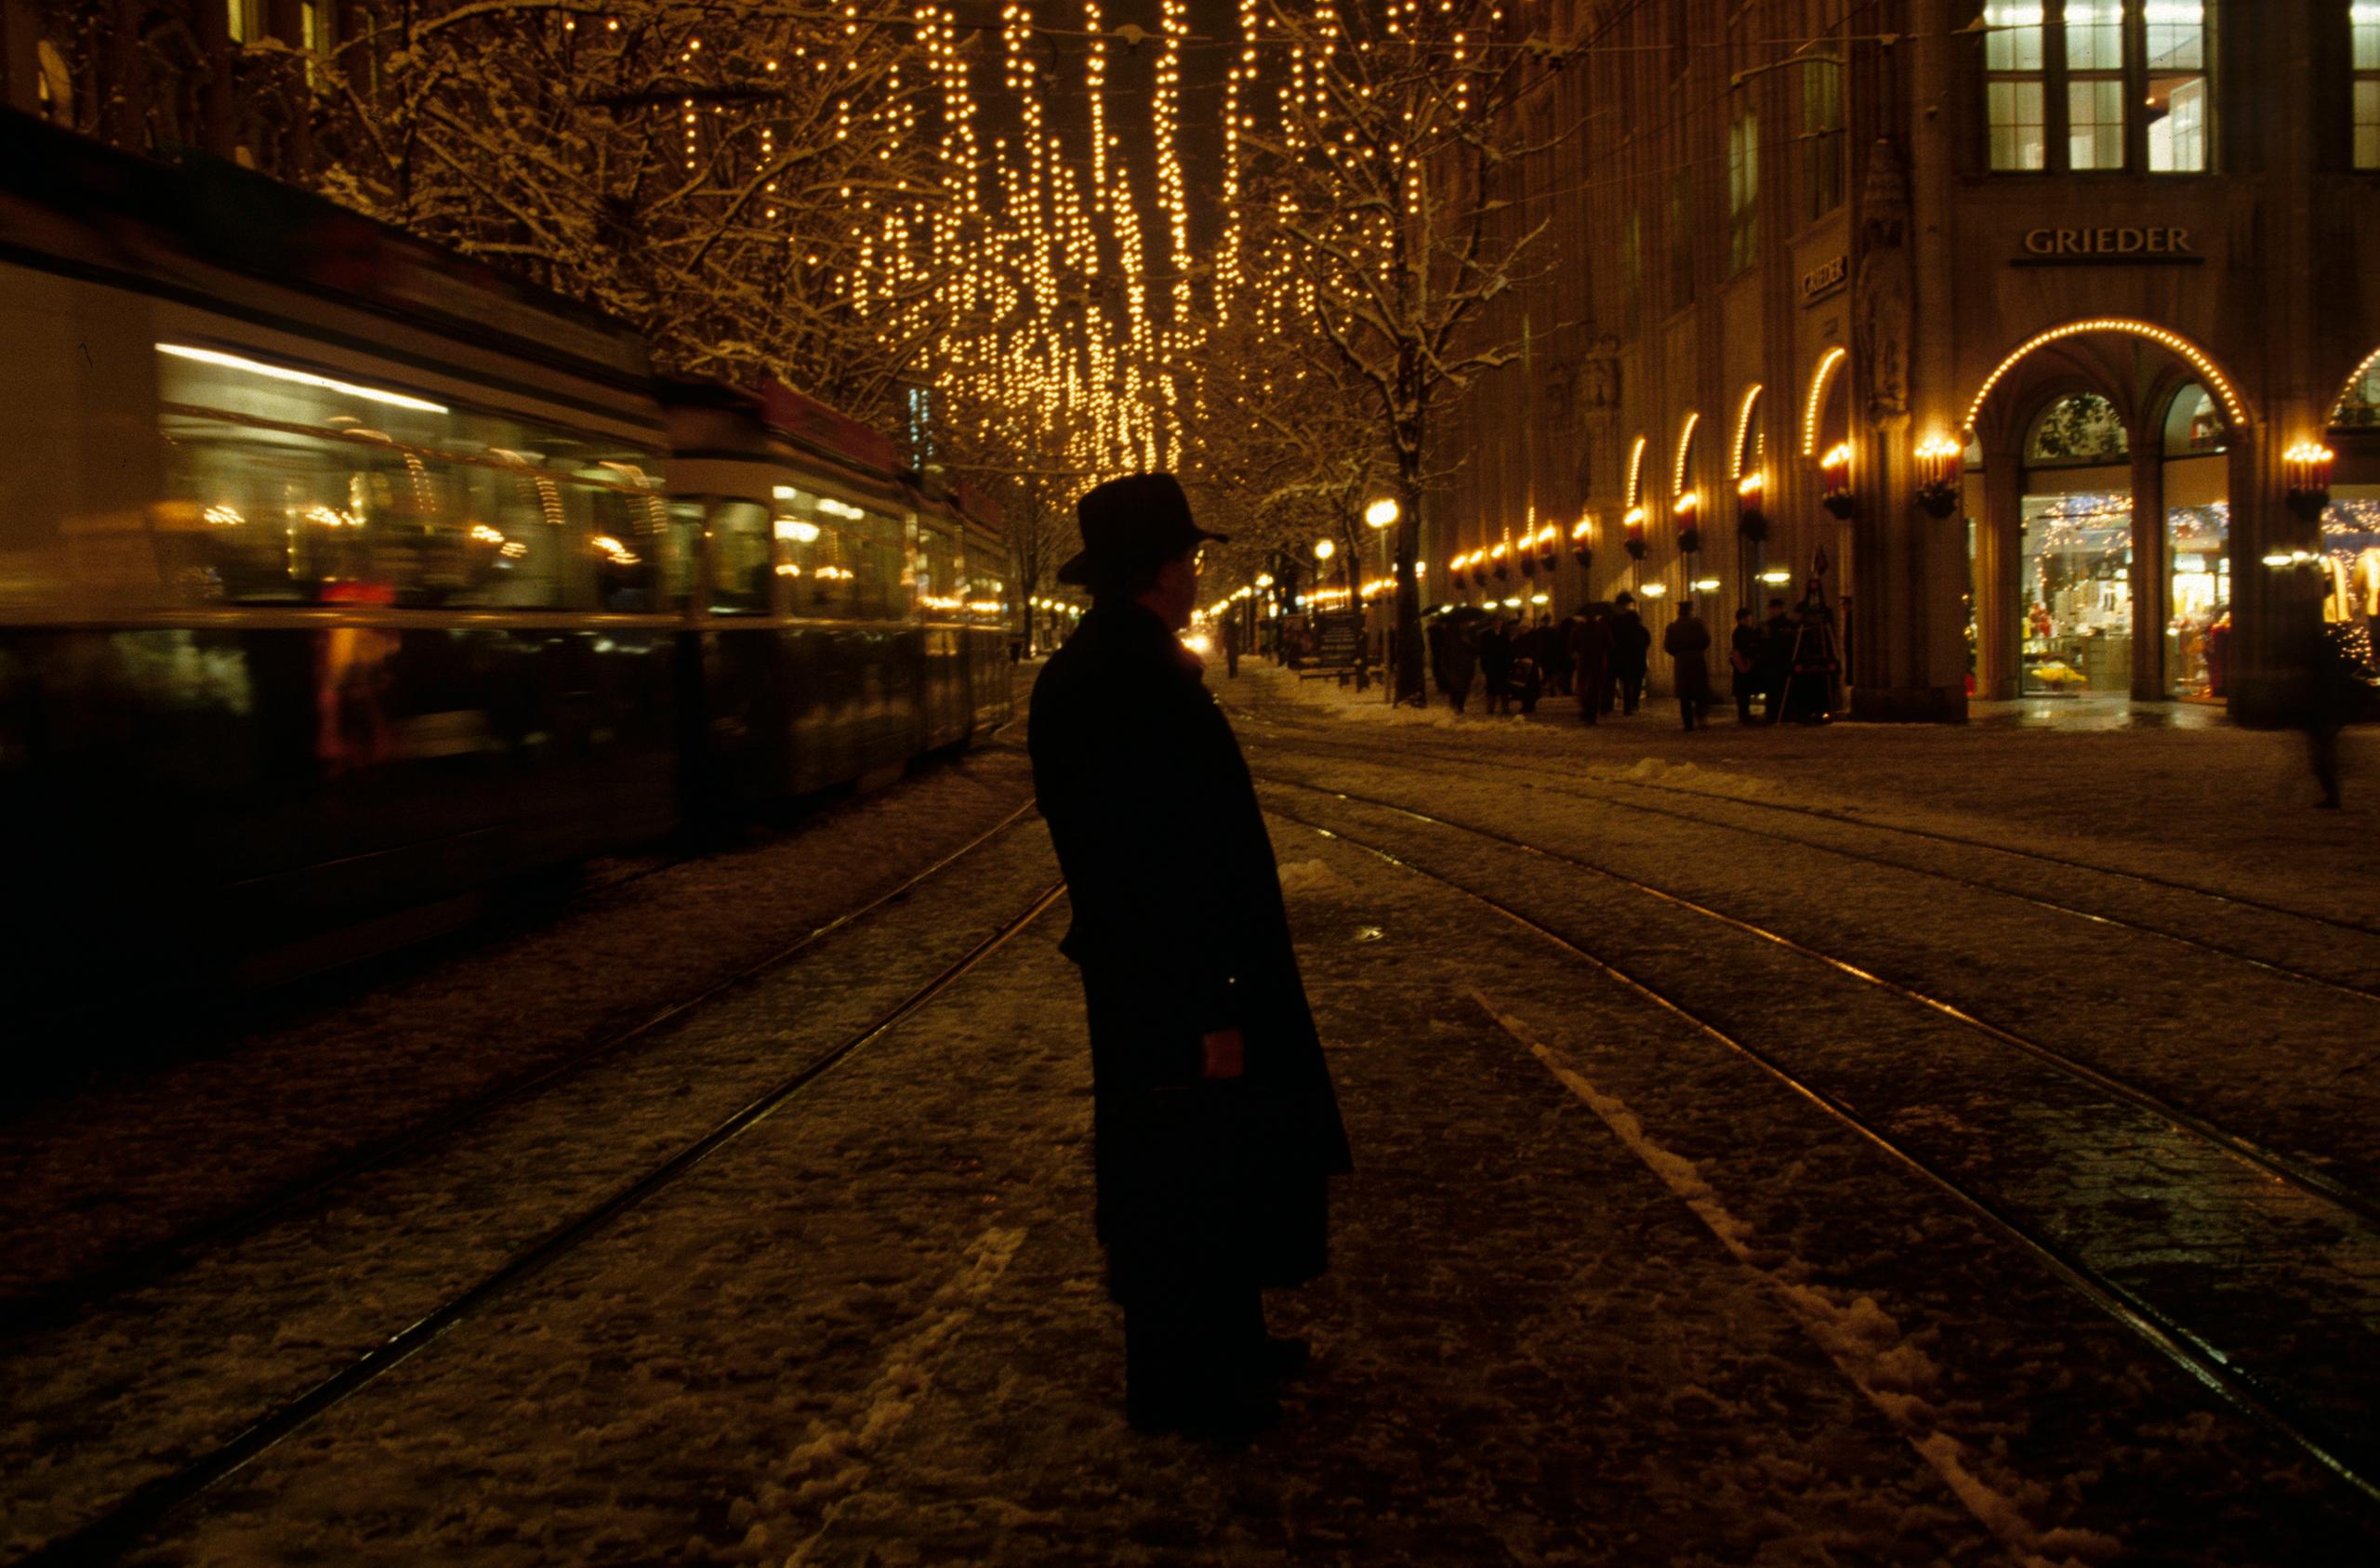 uomo in mezzo alla strada in una notte illuminata dalle luci natalizie